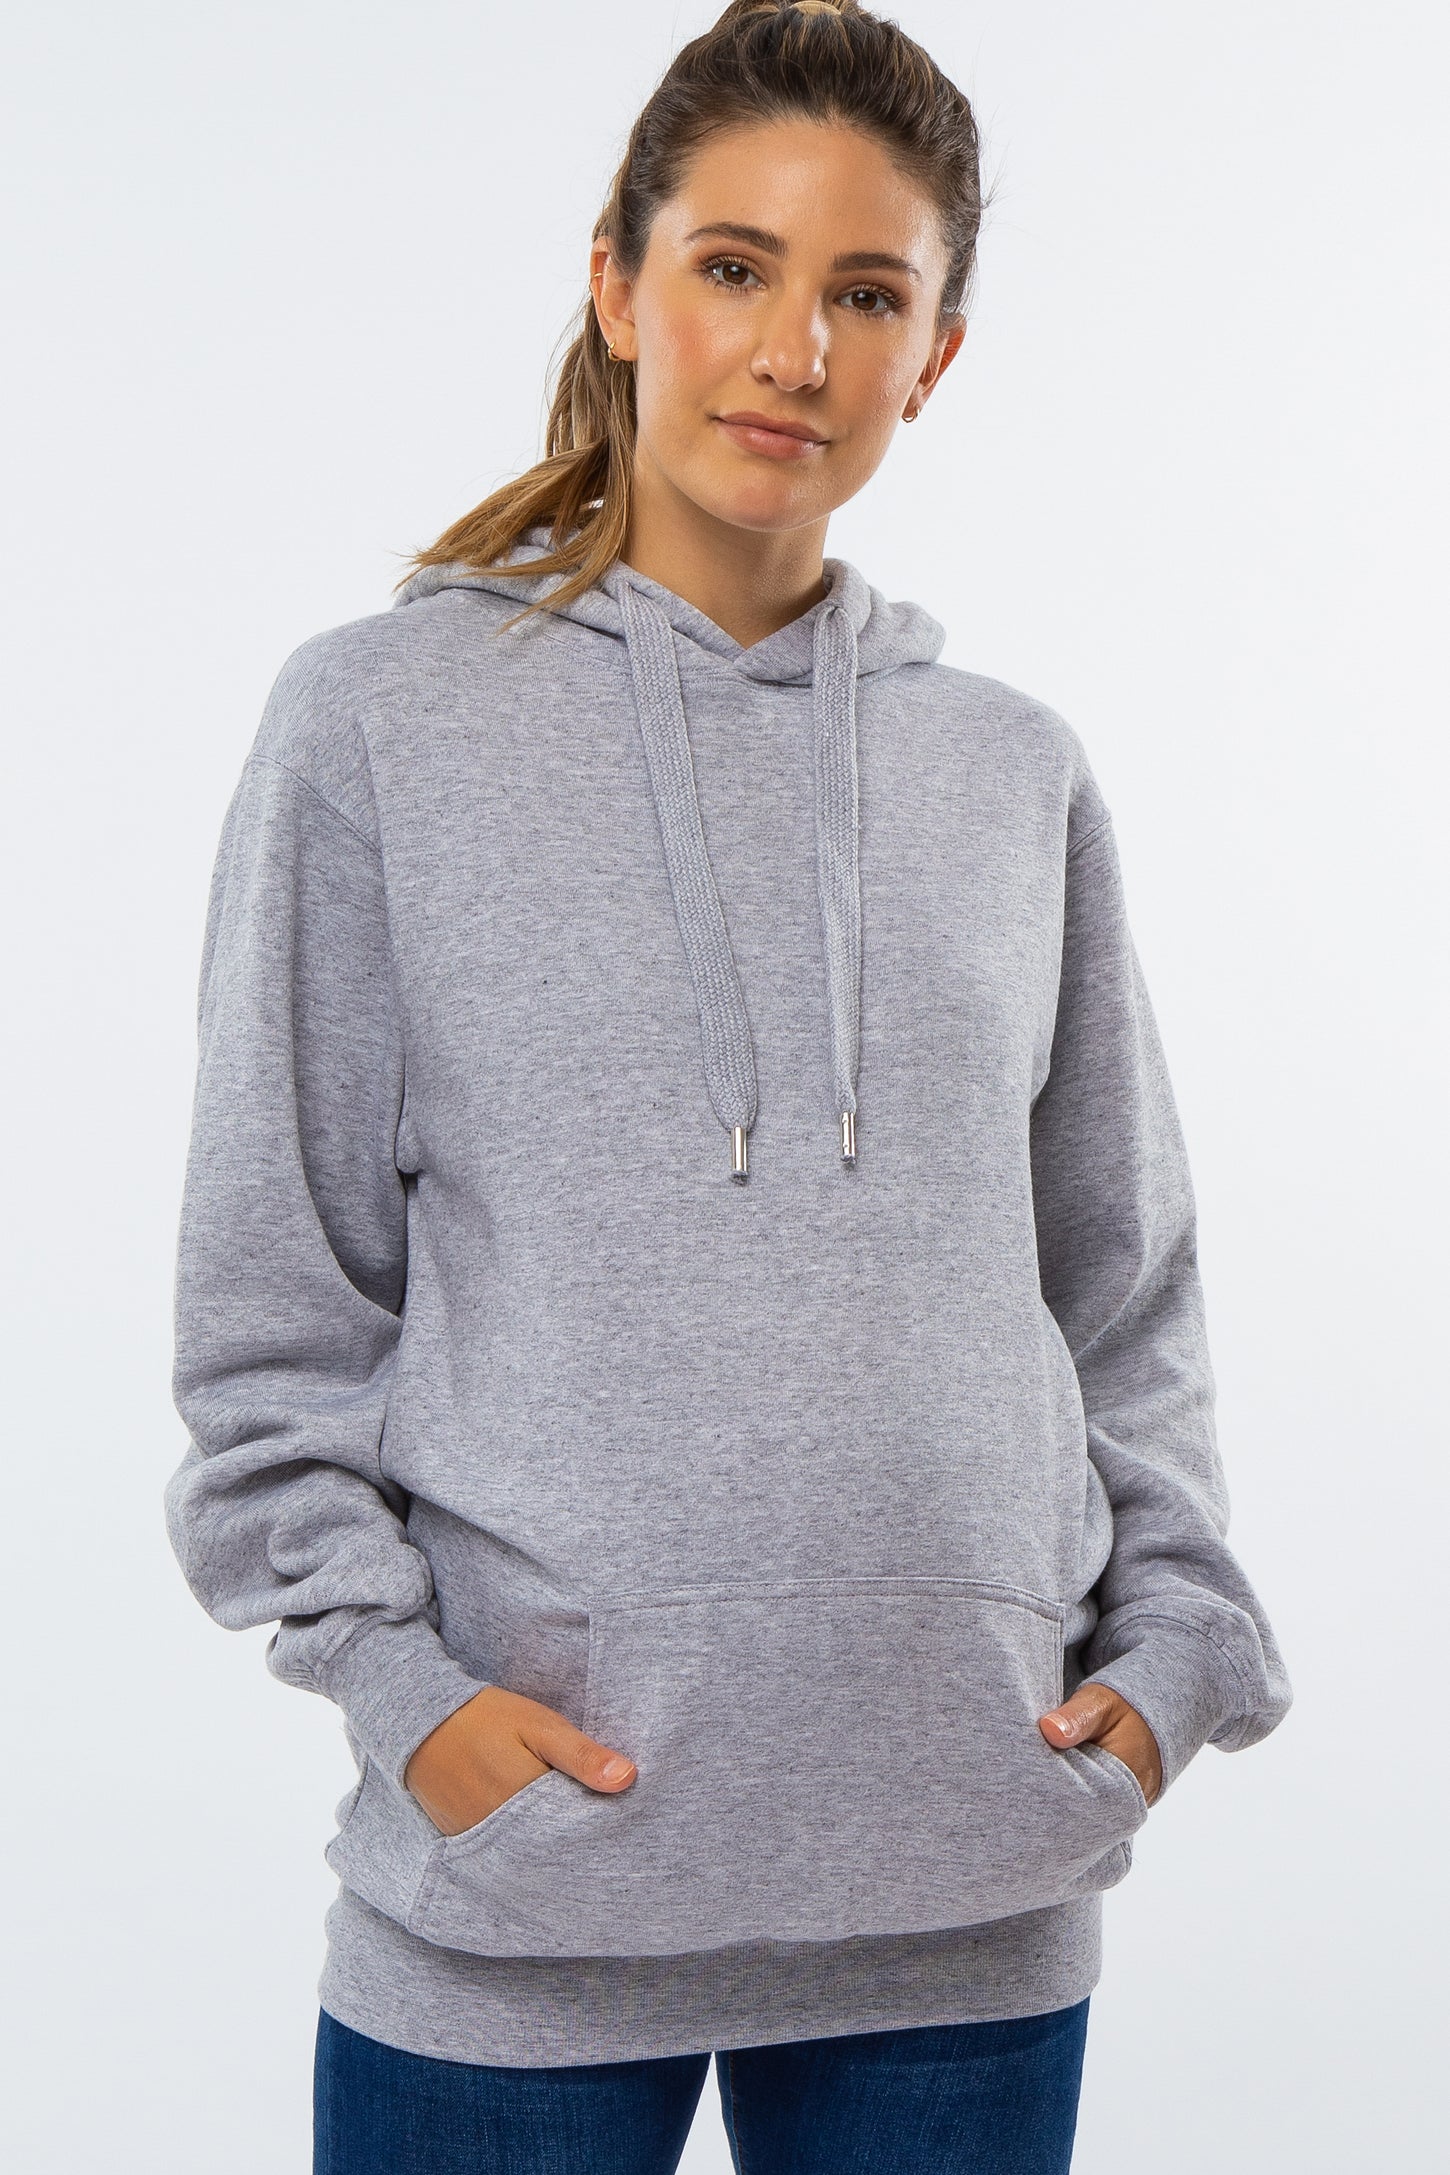 Heather Grey Oversized Maternity Hooded Sweatshirt